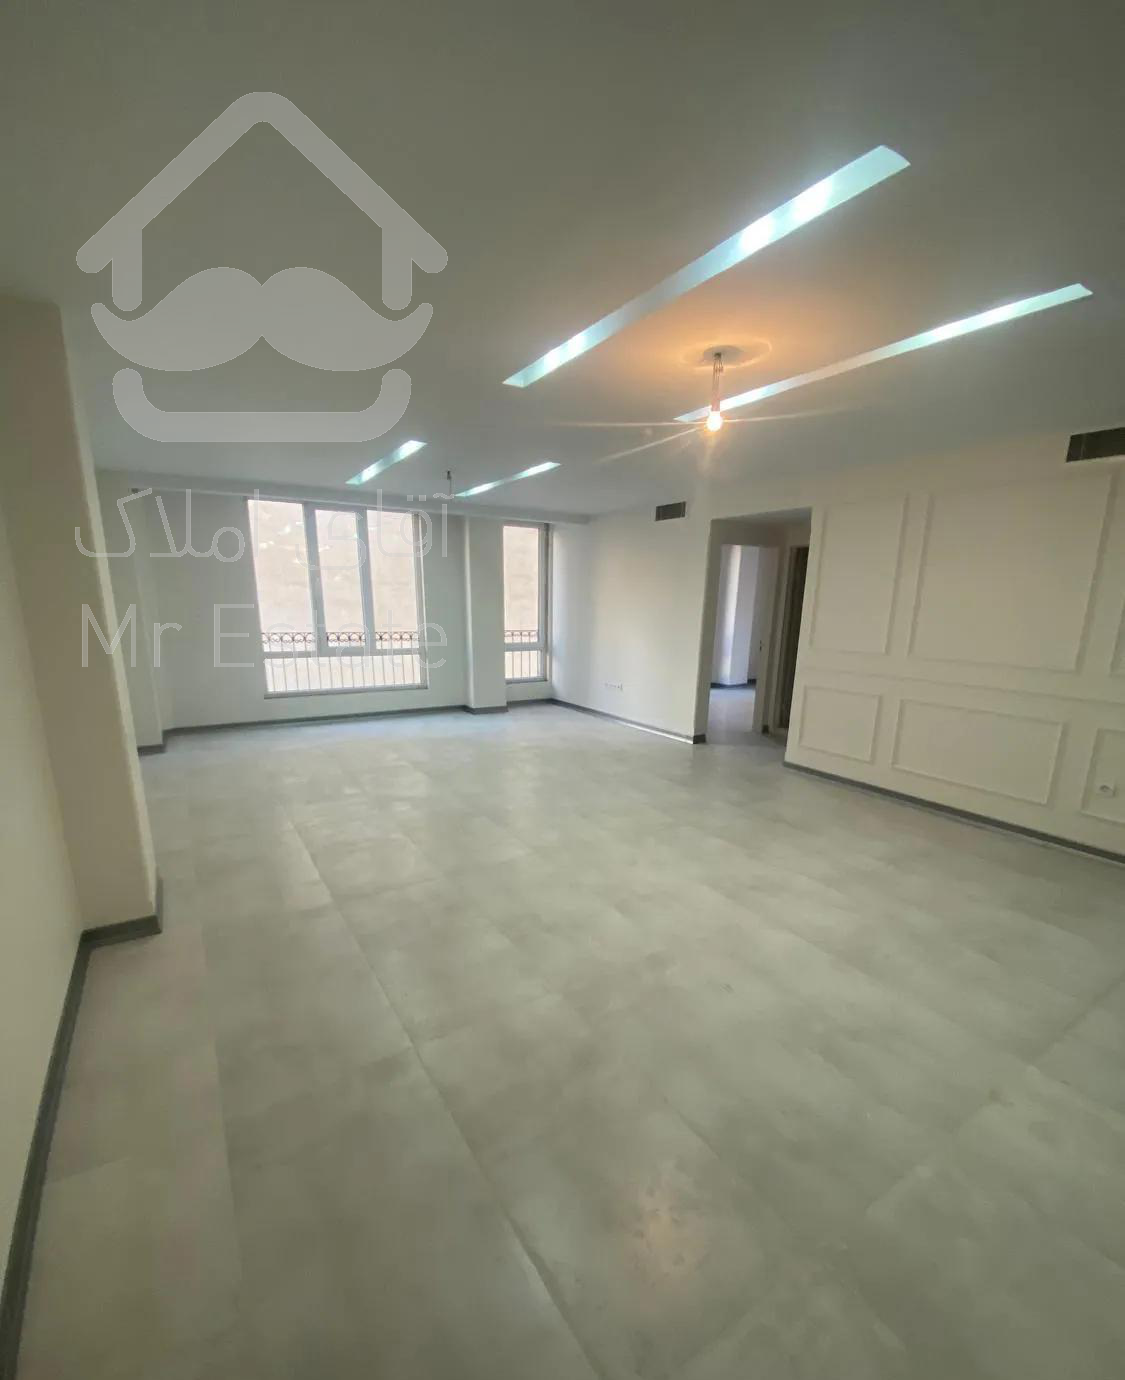 ۱۱۲ متر آپارتمان نوساز دارآباد